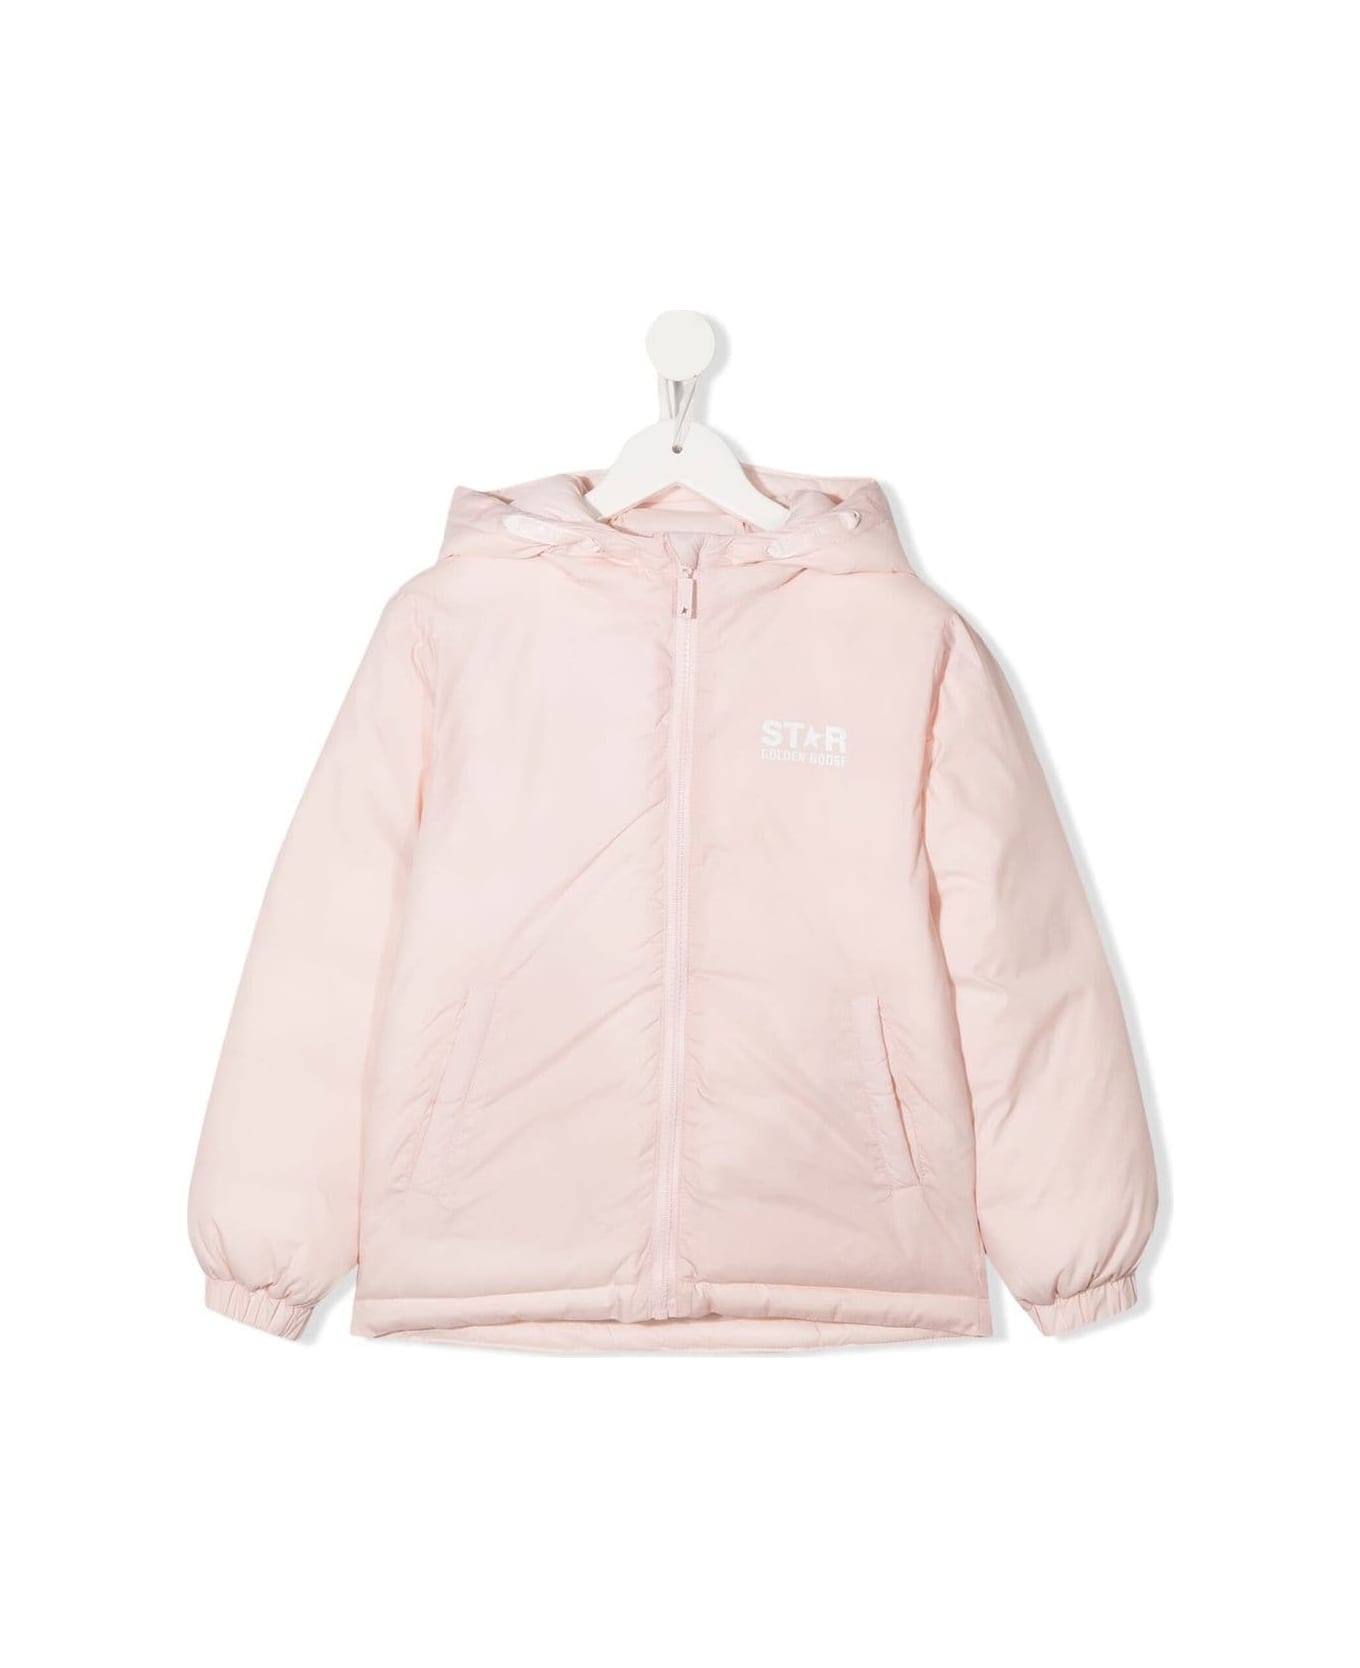 Golden Goose Pink Polyester Jacket - Rosa